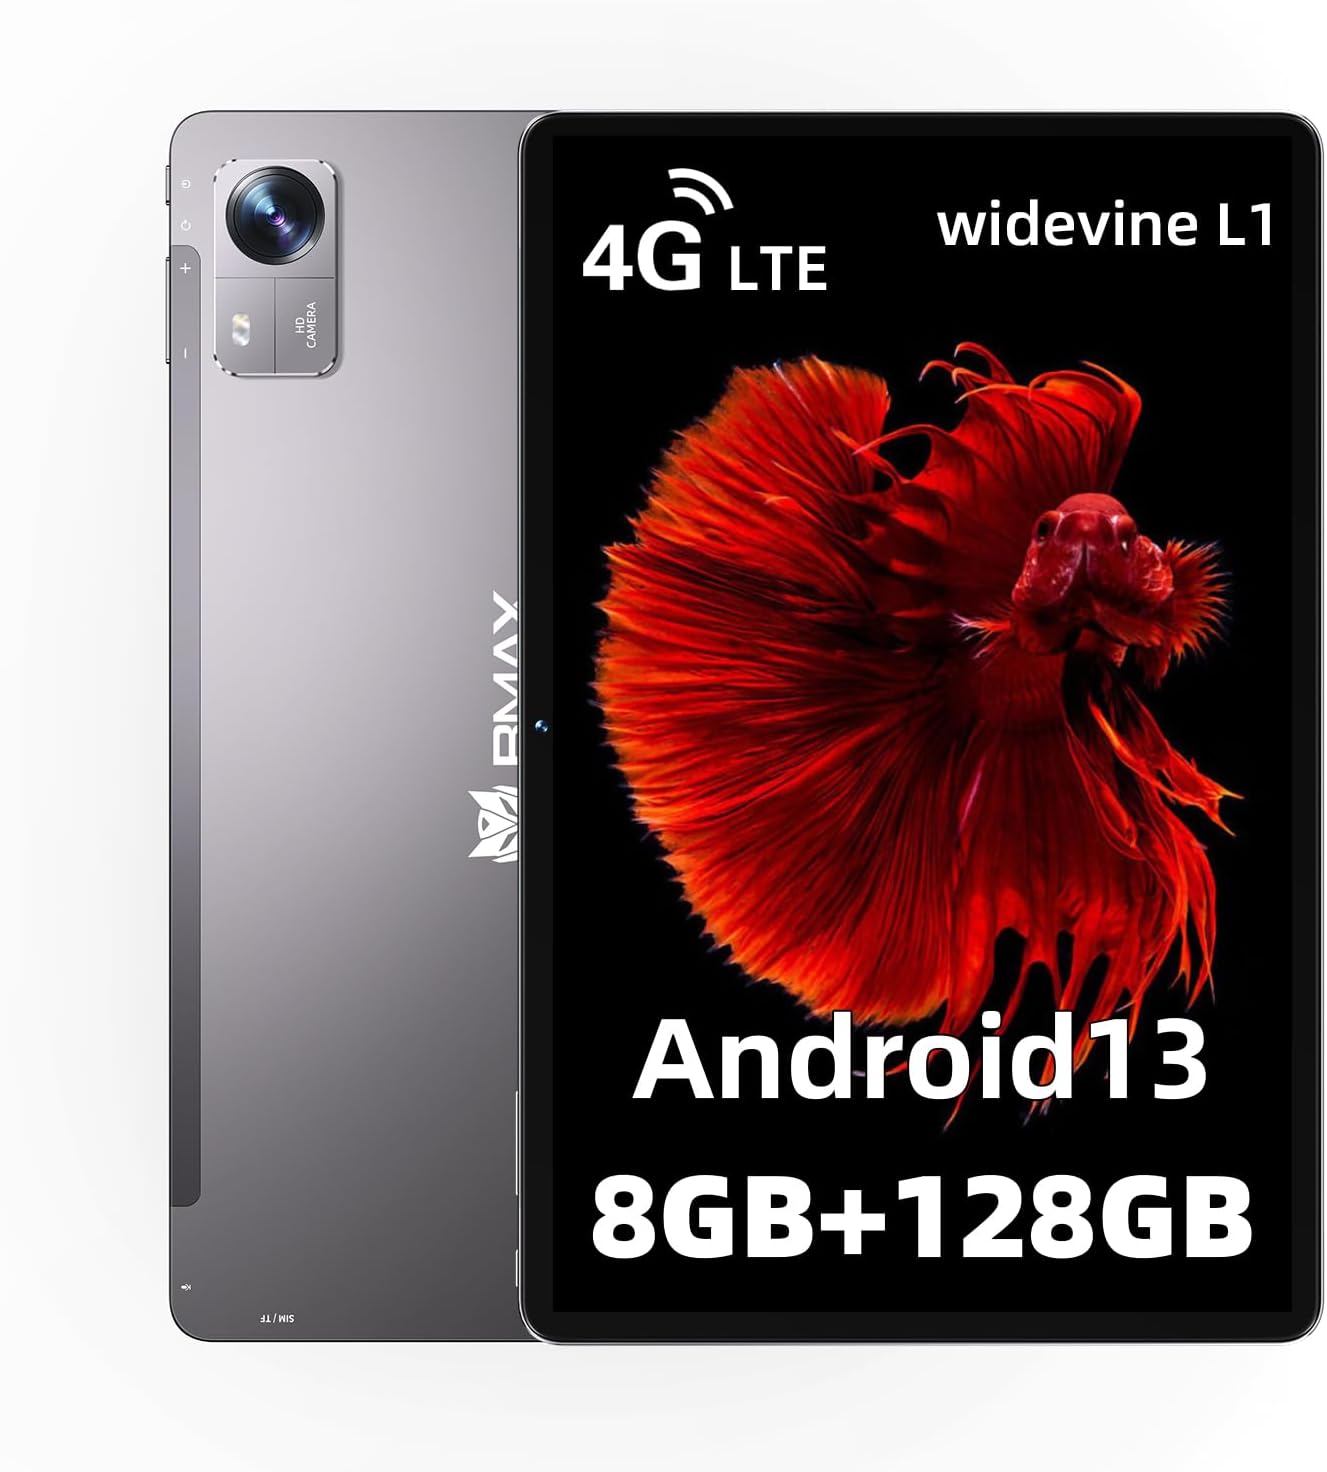 【5/20(月)限定 P10倍】Android13 タブレット I10Pro T606 タブレット 10インチ 8GB(4GB+4GB)RAM+ 128GB+1TB 拡張 8コアCPU In-Cellディスプレイ 1280*800解像度IPS 7000mAh大容量バッテリー デュアルスピーカー 5MP/13MPカメラ LTE通信可能+顔認識